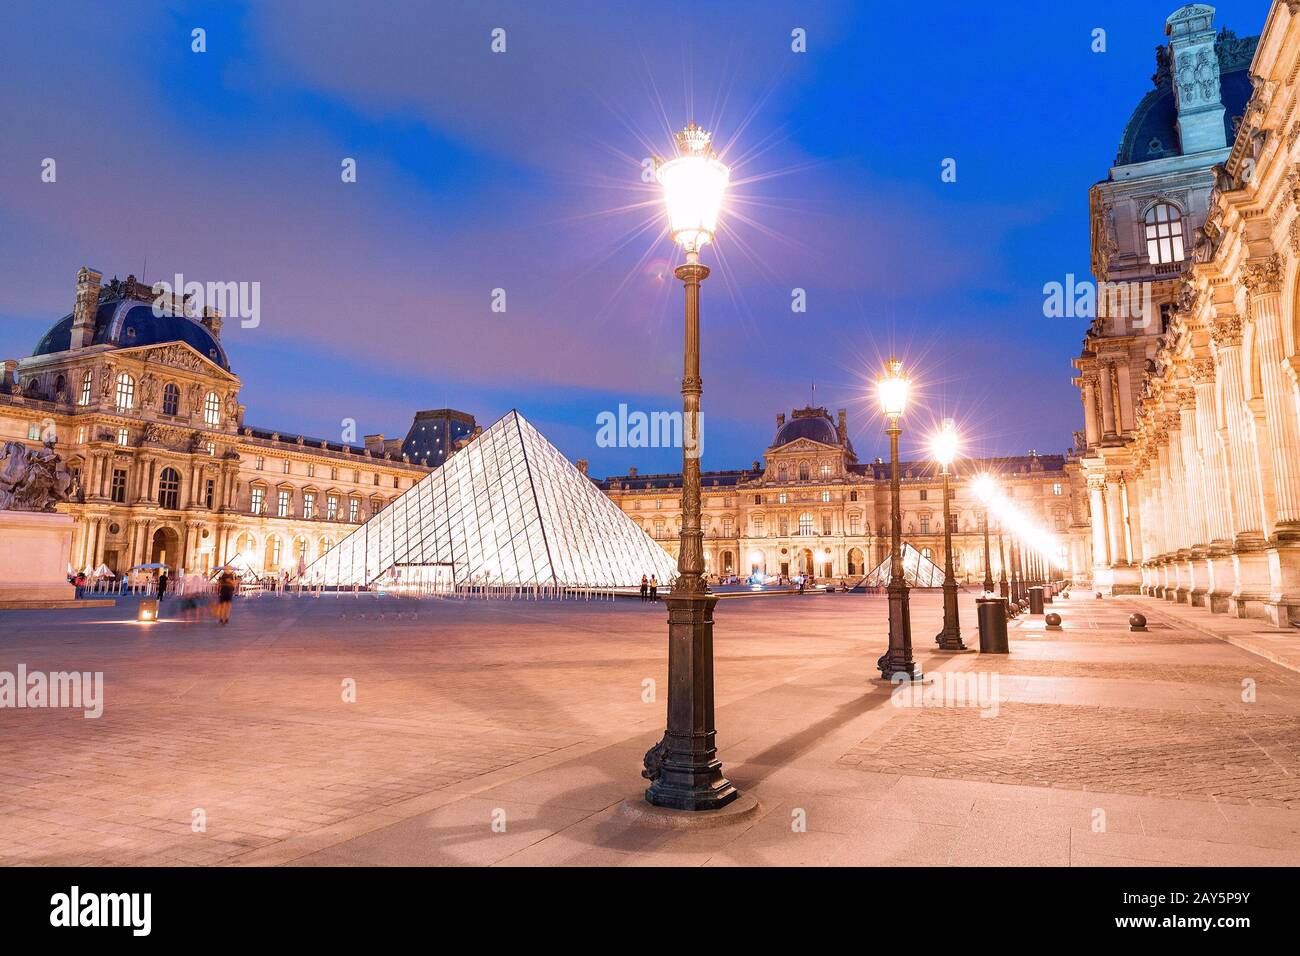 Complexe du Musée du Louvre illuminé de nuit avec des lanternes Banque D'Images